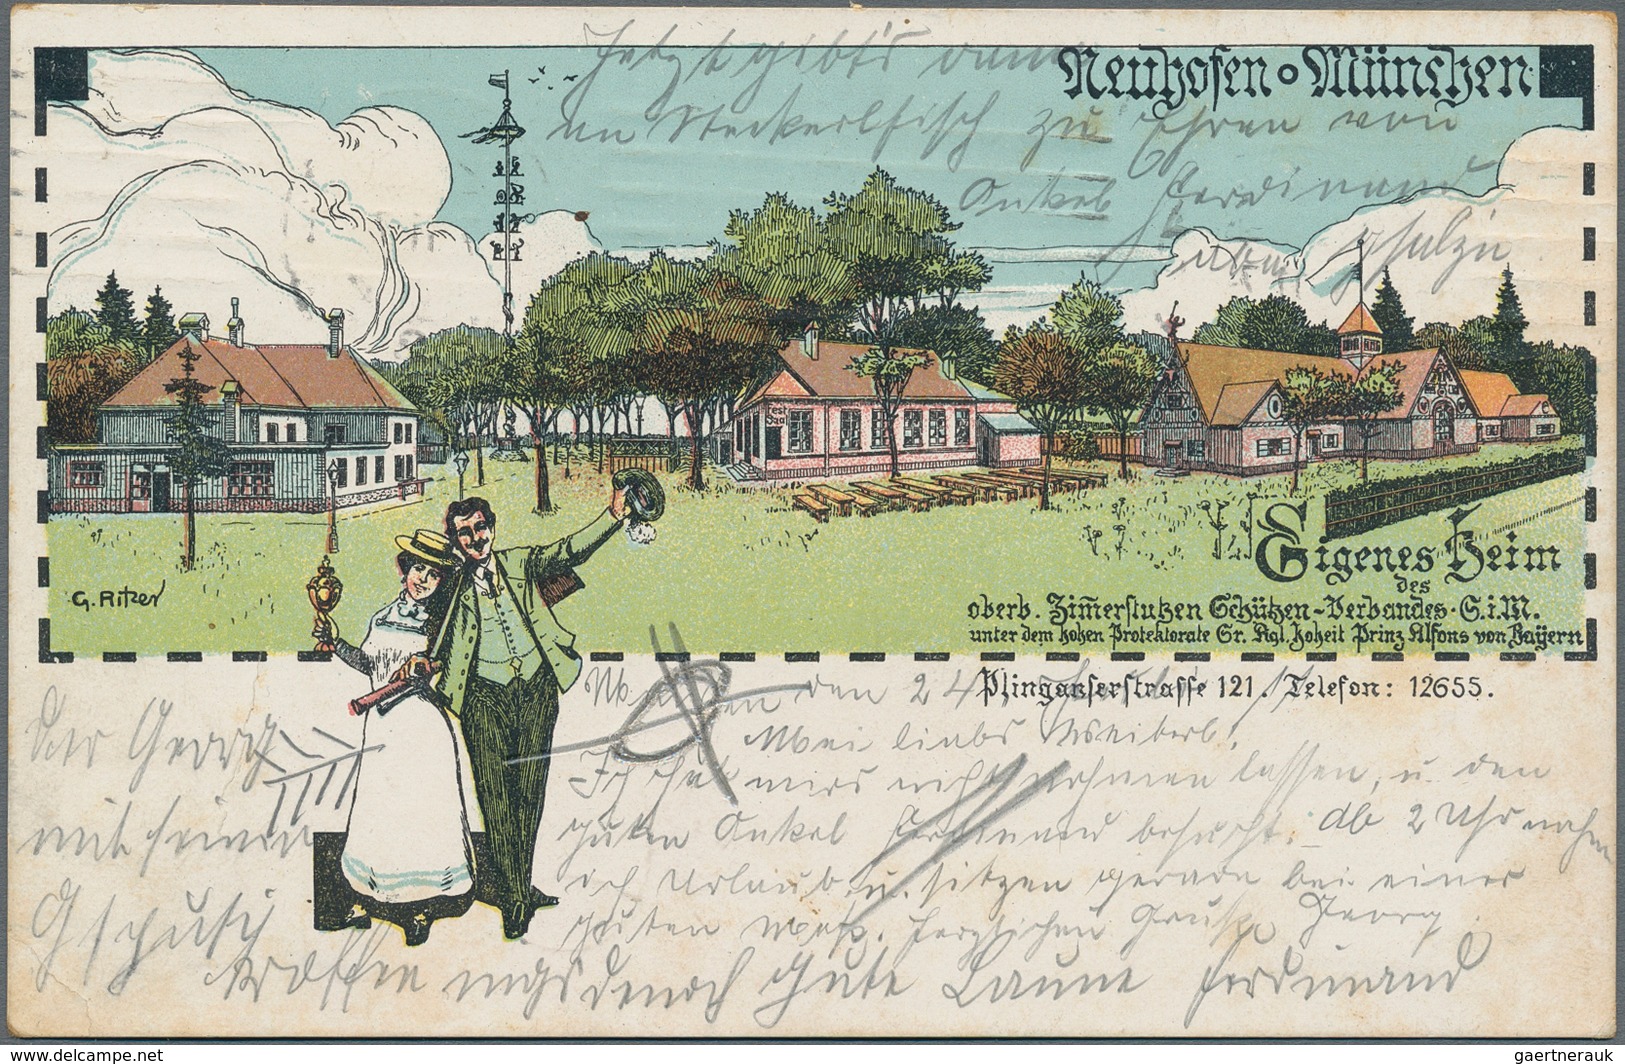 Ansichtskarten: Bayern: MÜNCHEN SENDLING, Schachtel mit über 140 historischen Ansichtskarten ab 1898